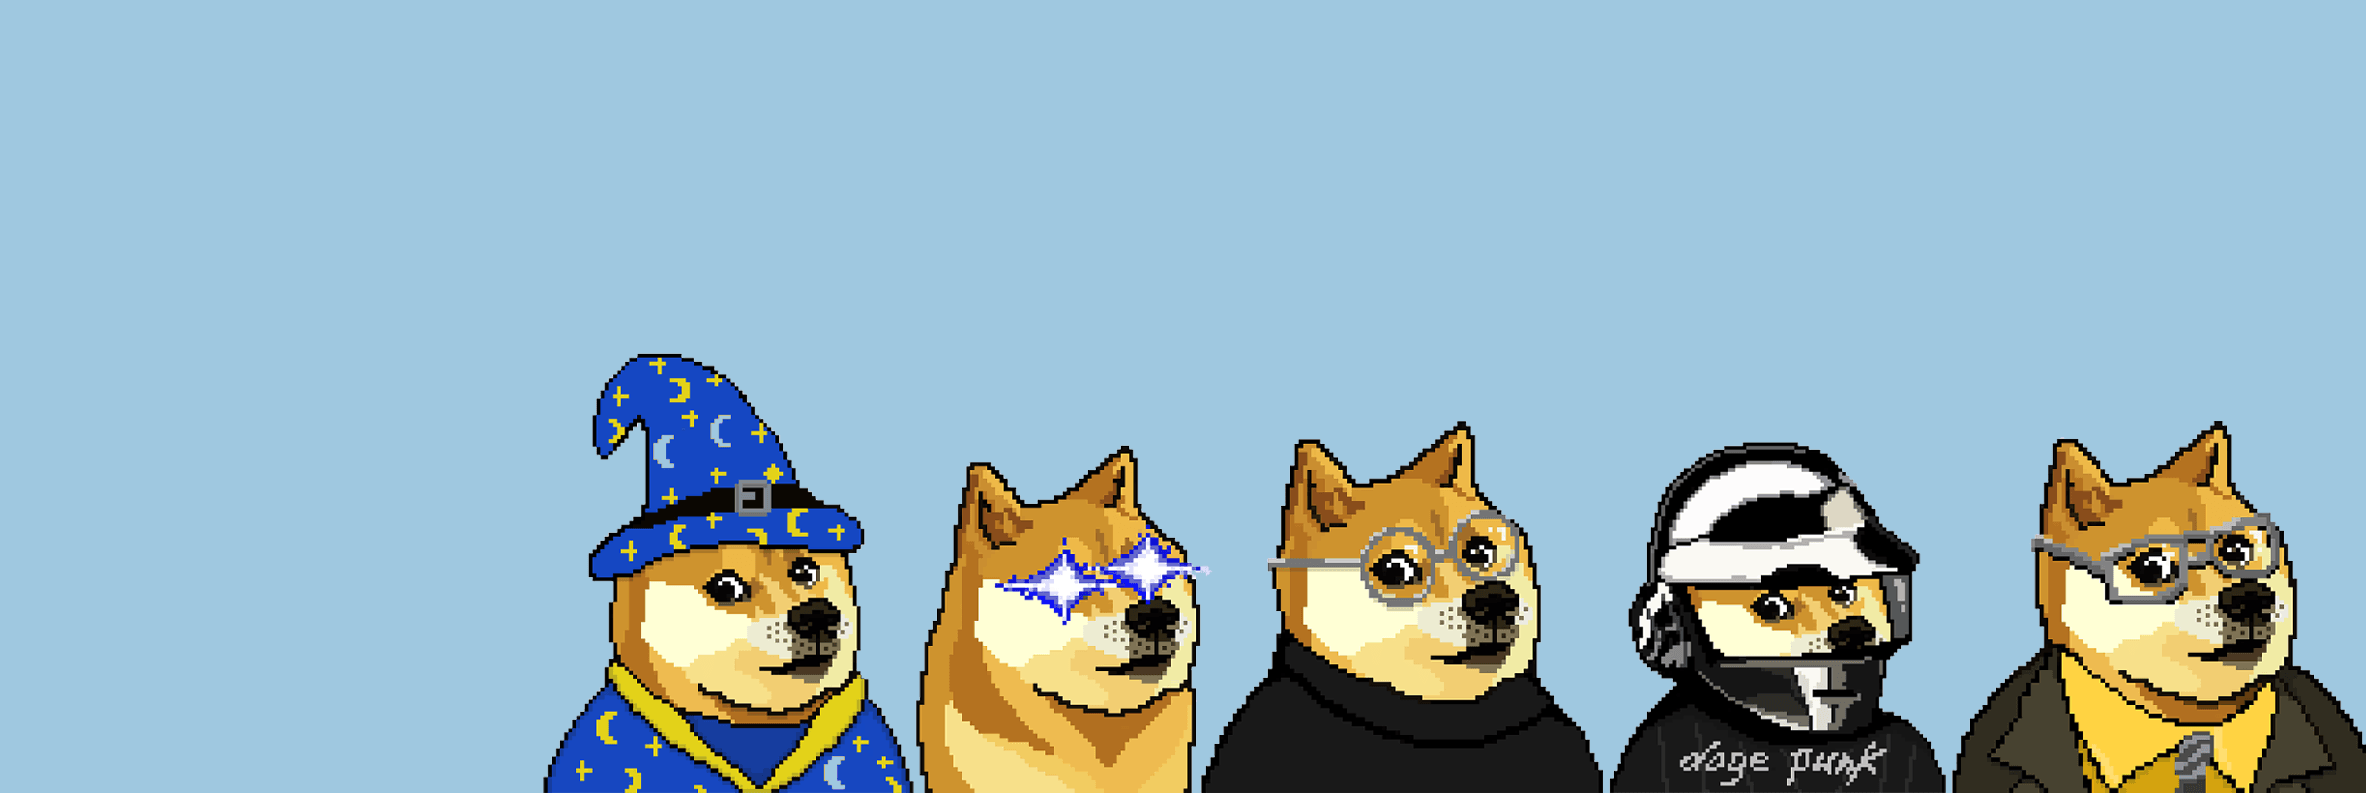 Dogepunks bannière